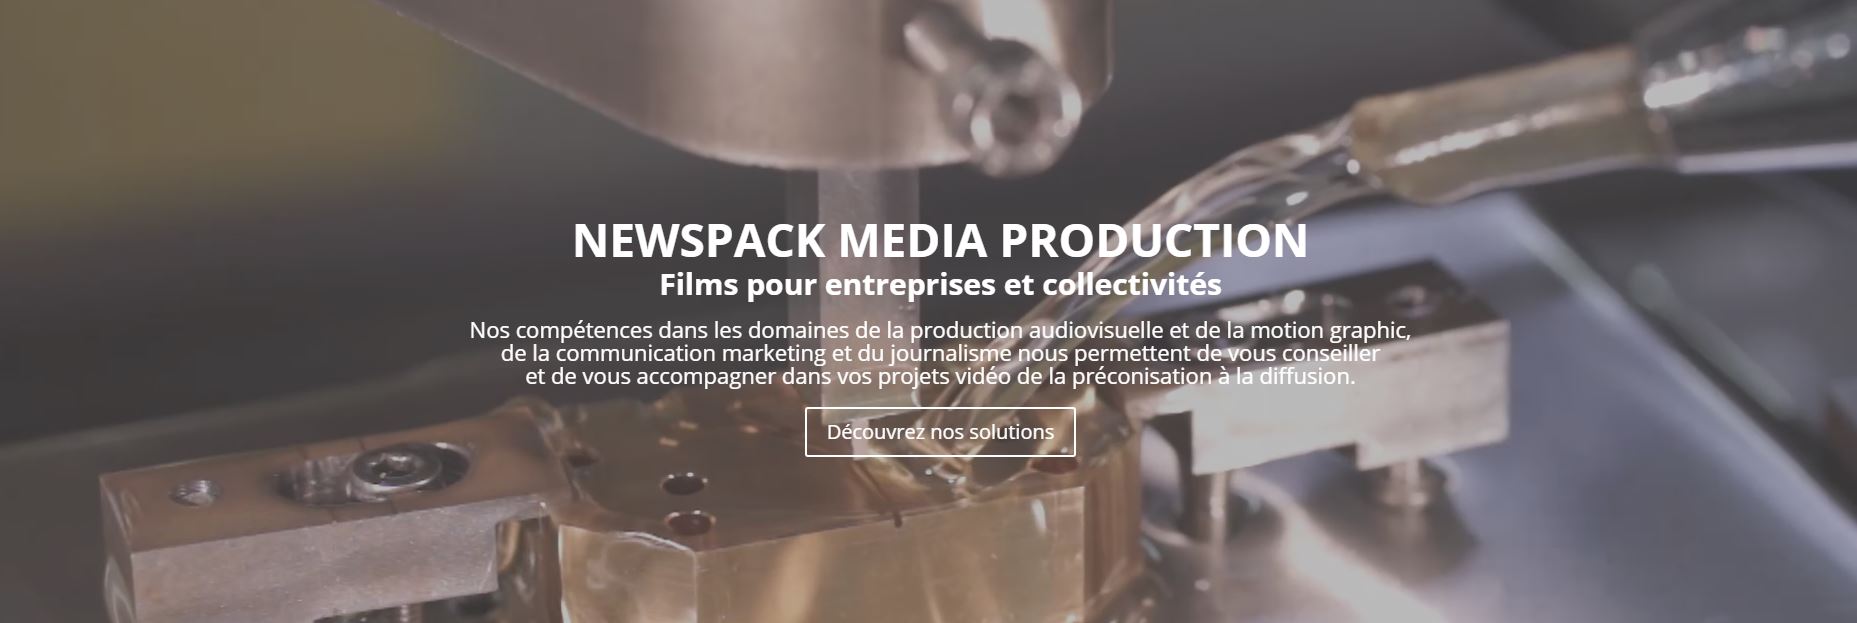 (c) Newspack.fr